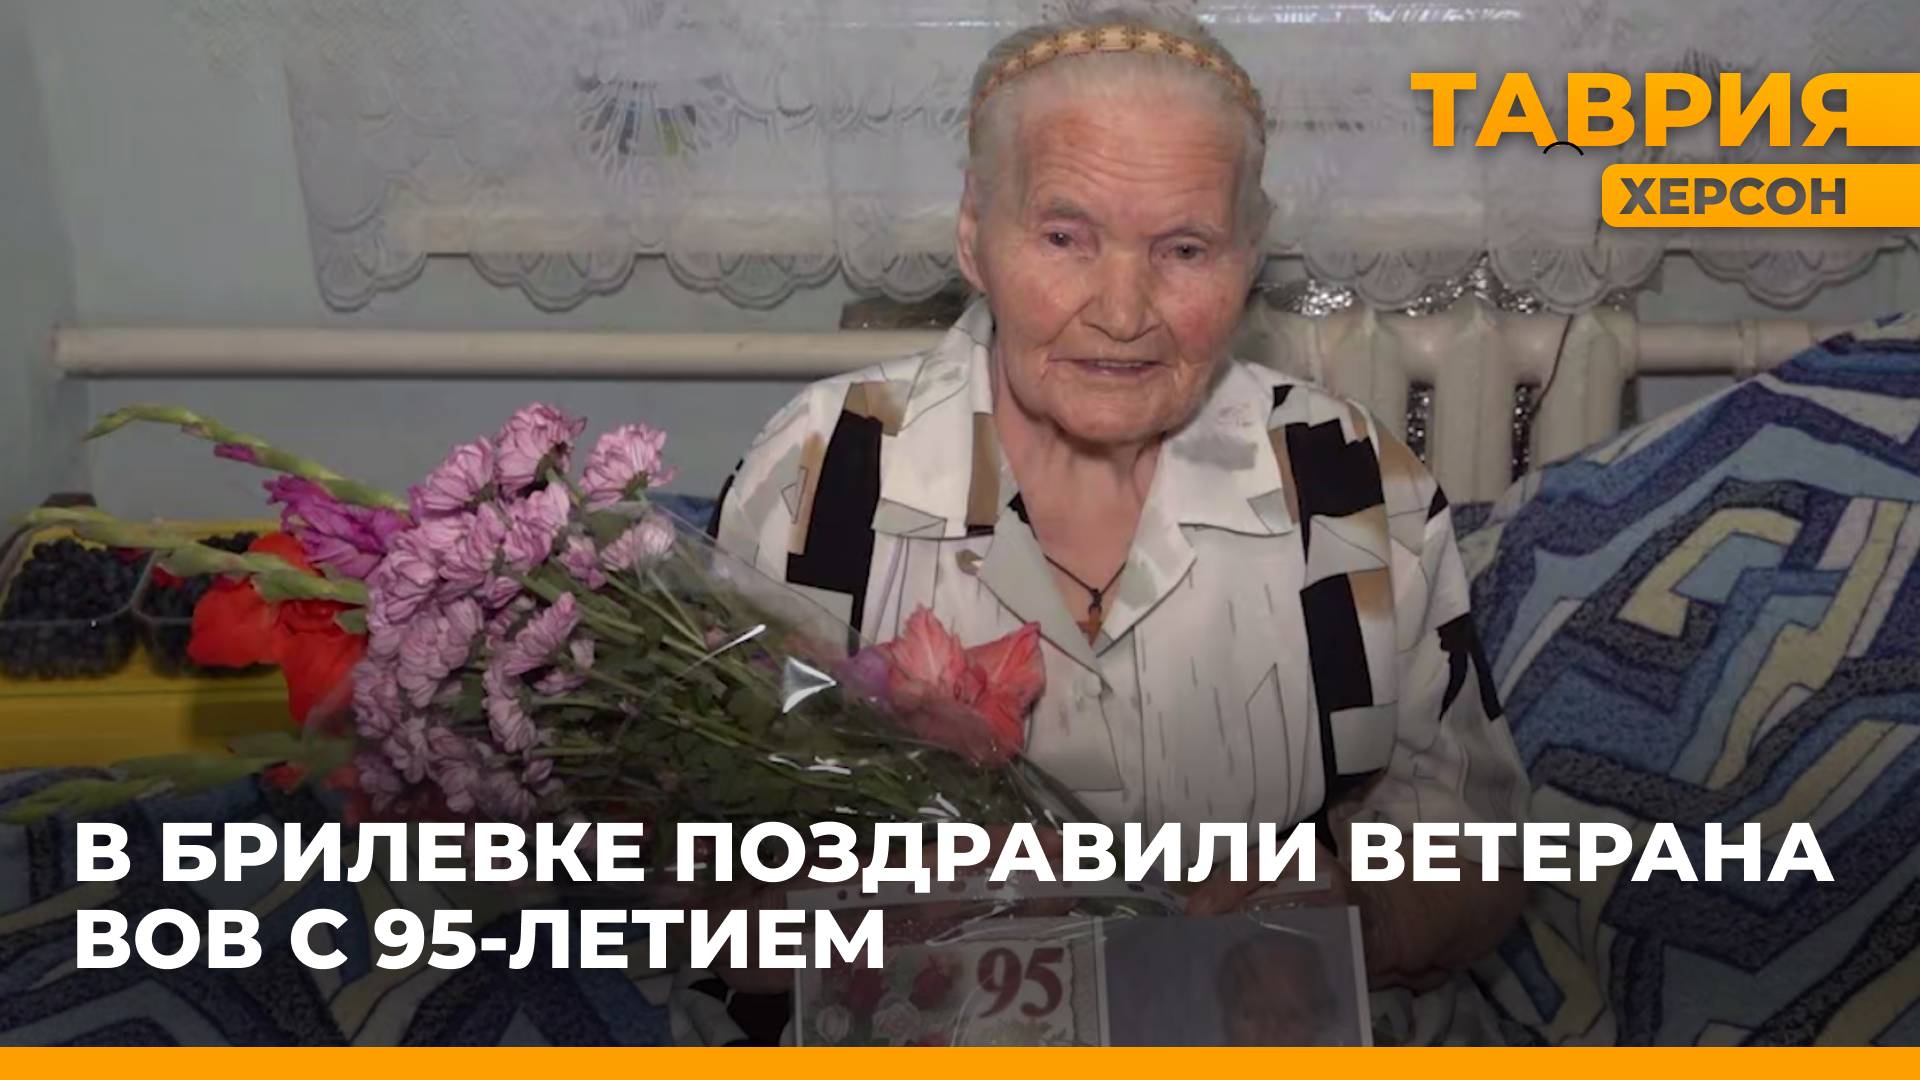 Представители Алешкинской администрации поздравили жительницу Брилёвки с 95-летним юбилеем